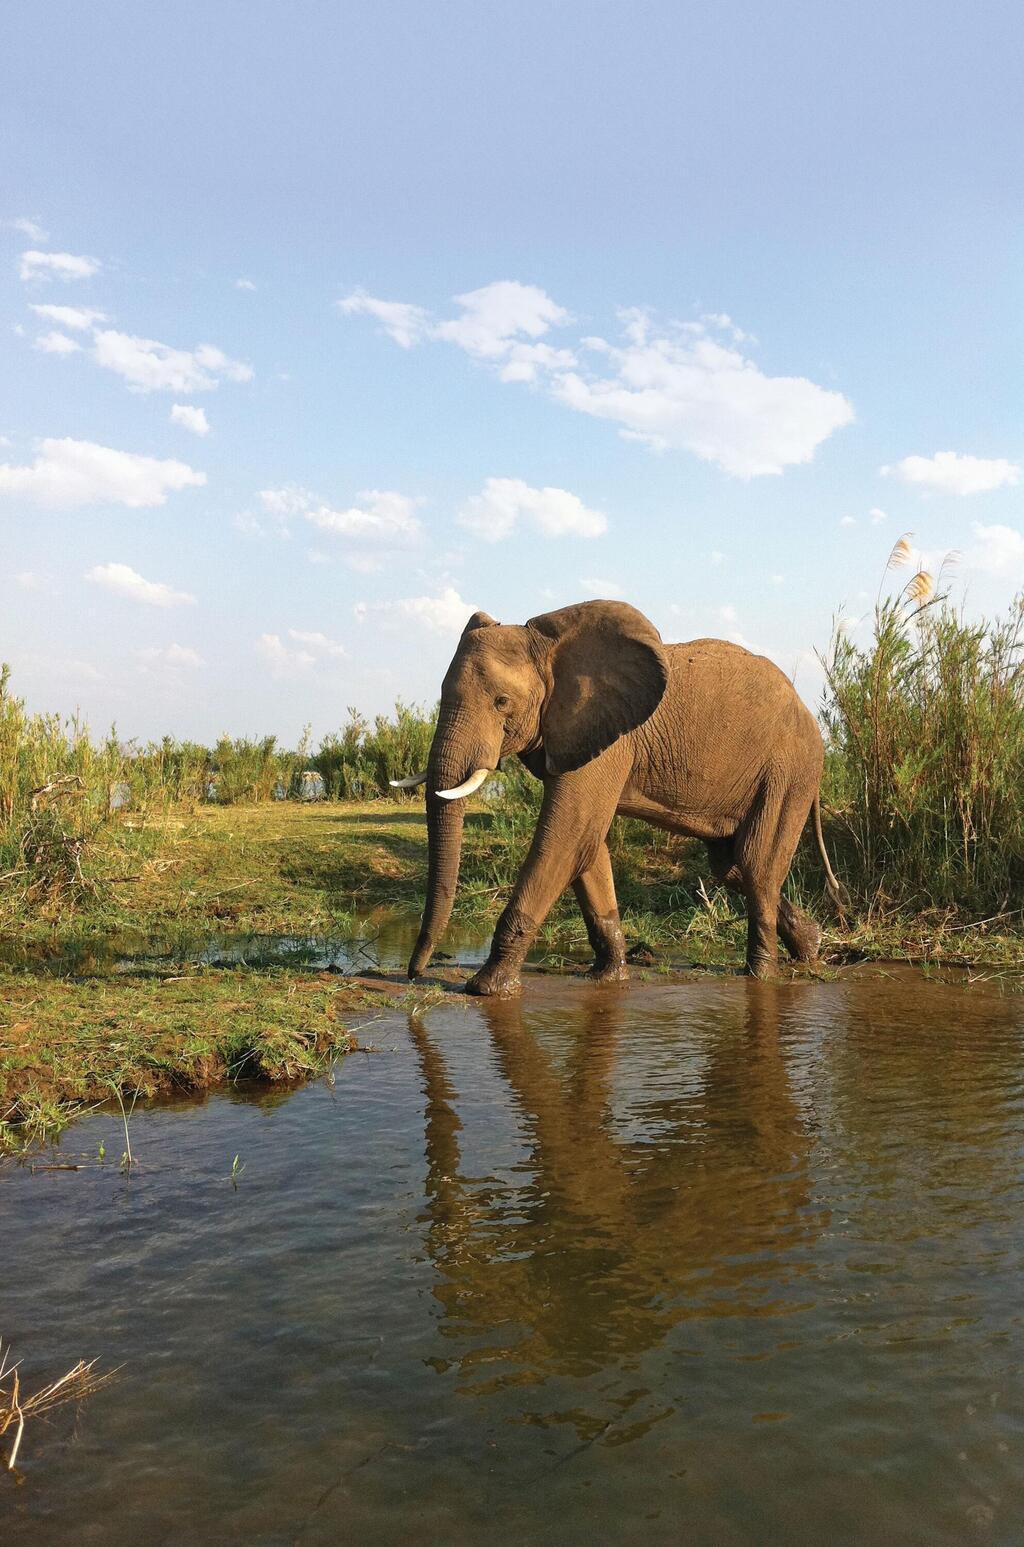  אורה רטס דוידוביץ אפריקה ספר פילים פיל